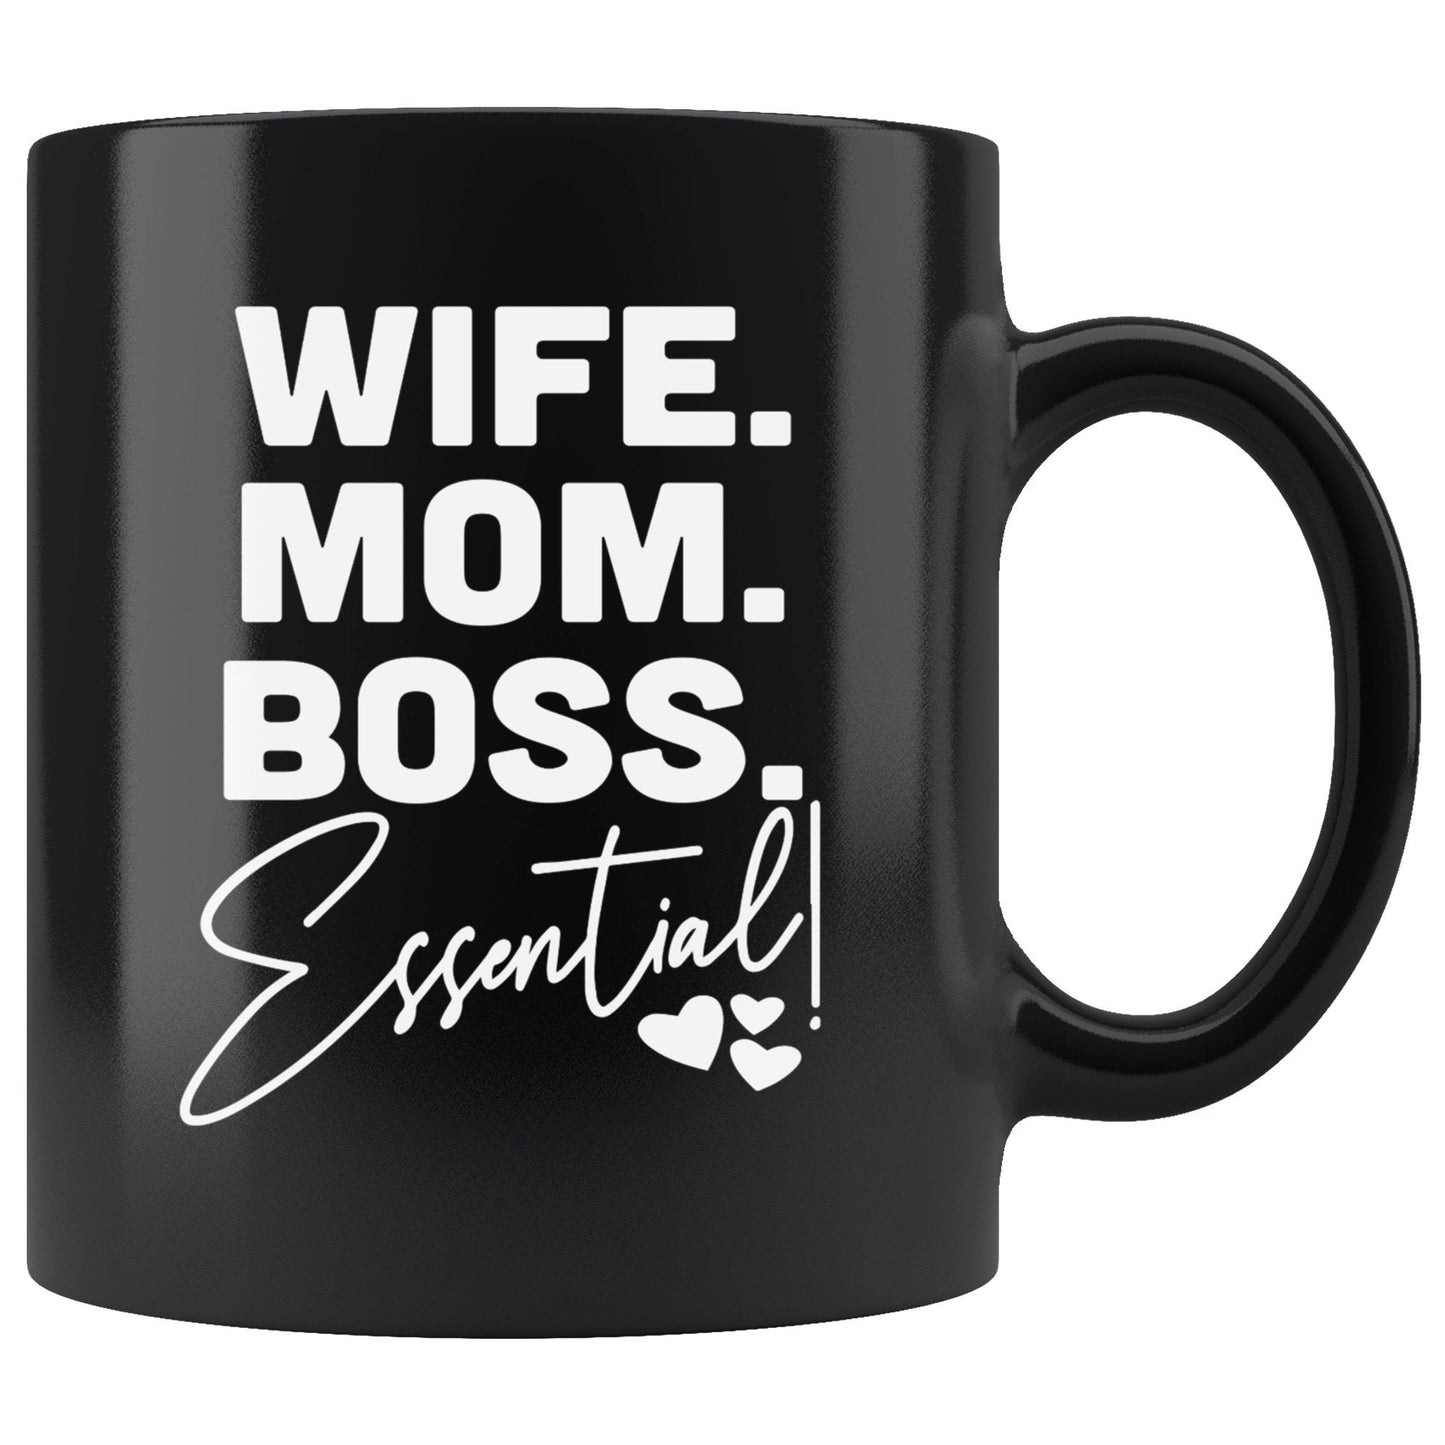 Ooffee Mug - Wife, Mom, Boss, Essential Black Cup